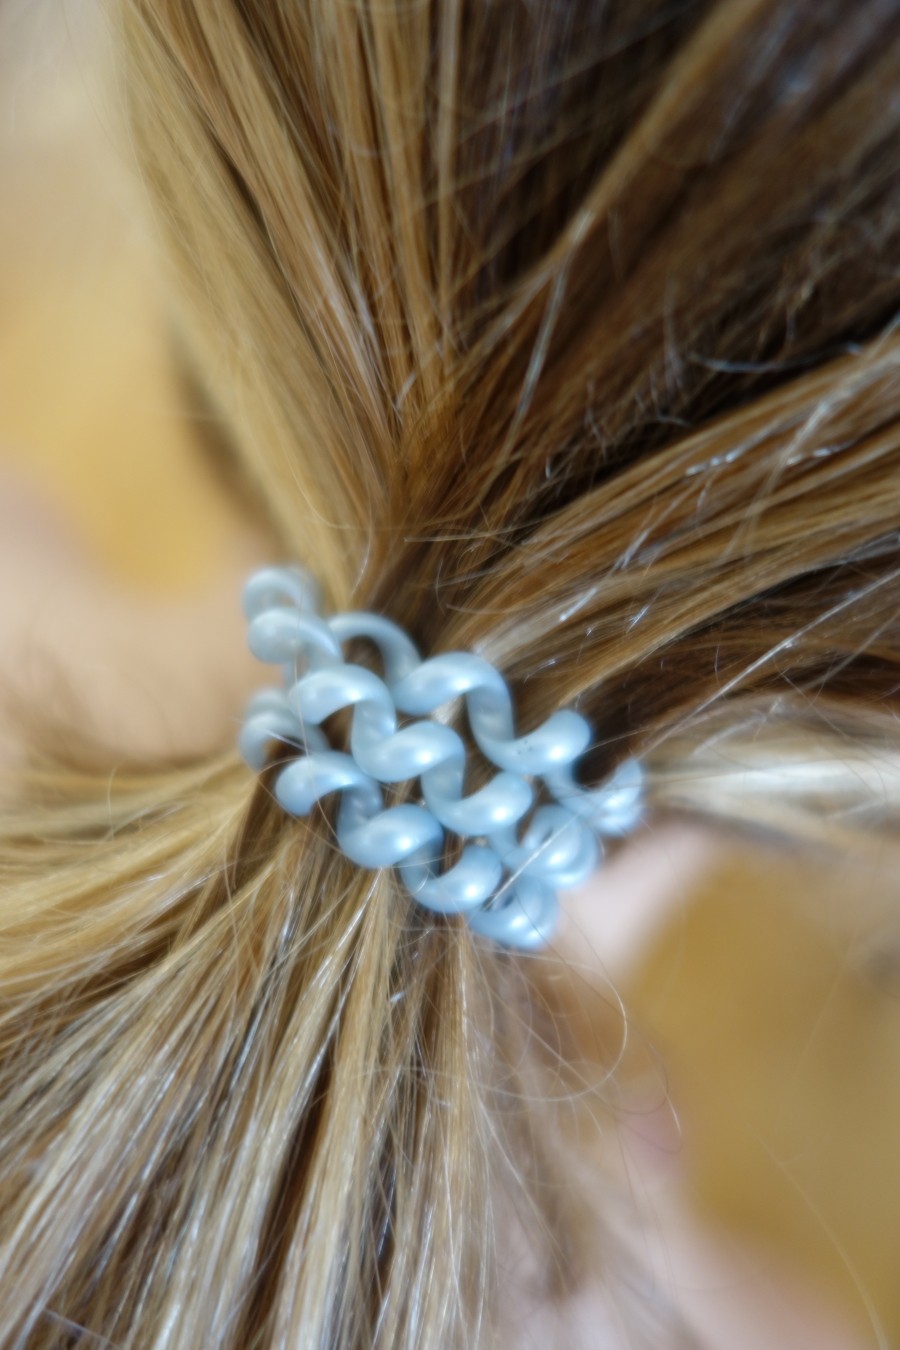 Die Haare entweder offen lassen oder locker mit Spiralgummis zusammenbinden. Die schädigen das Haar nicht so.